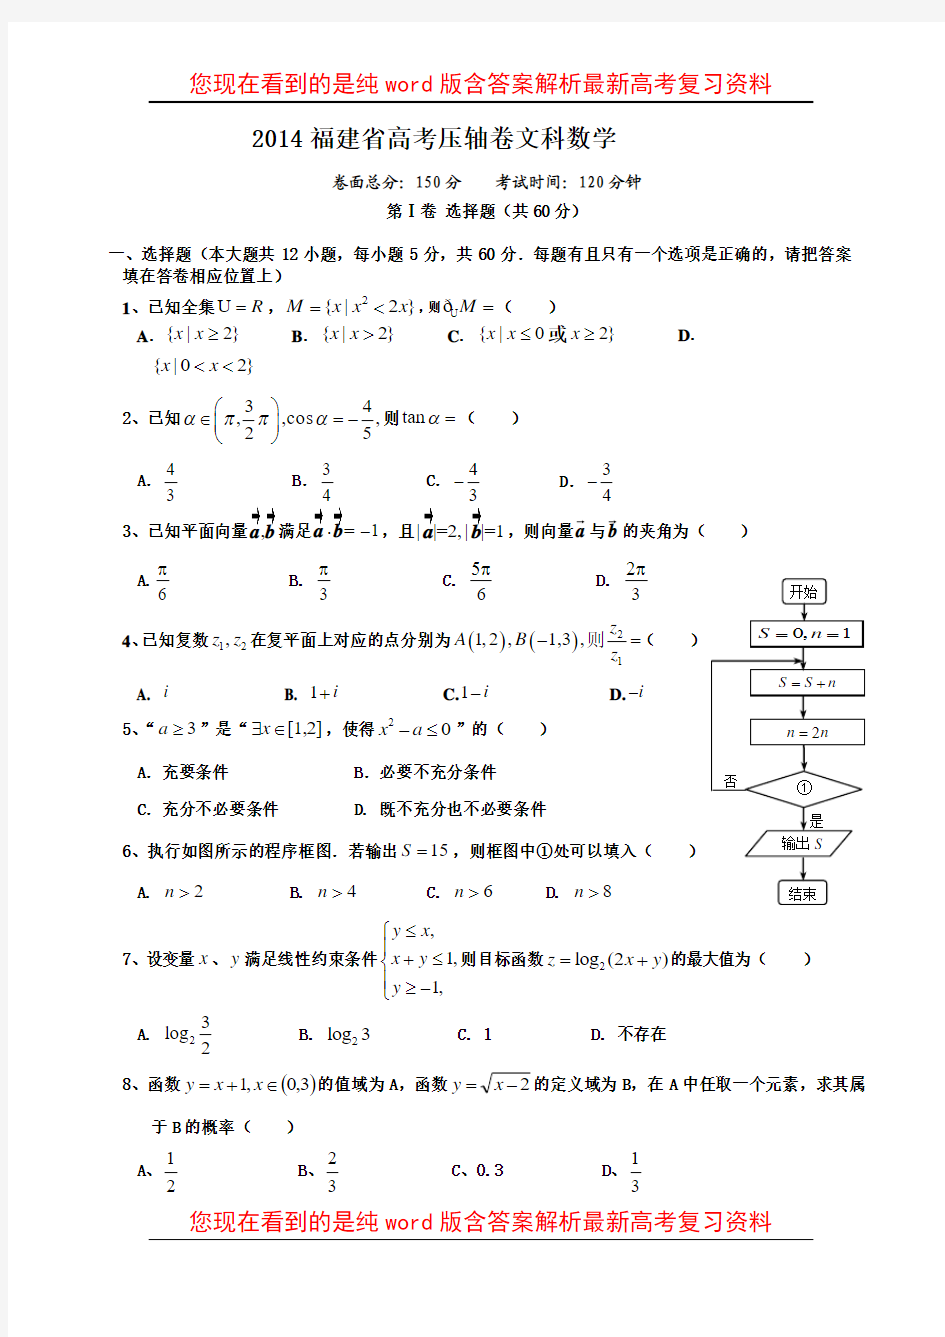 最新福建省2014年高考压轴卷文科数学试题(含答案)